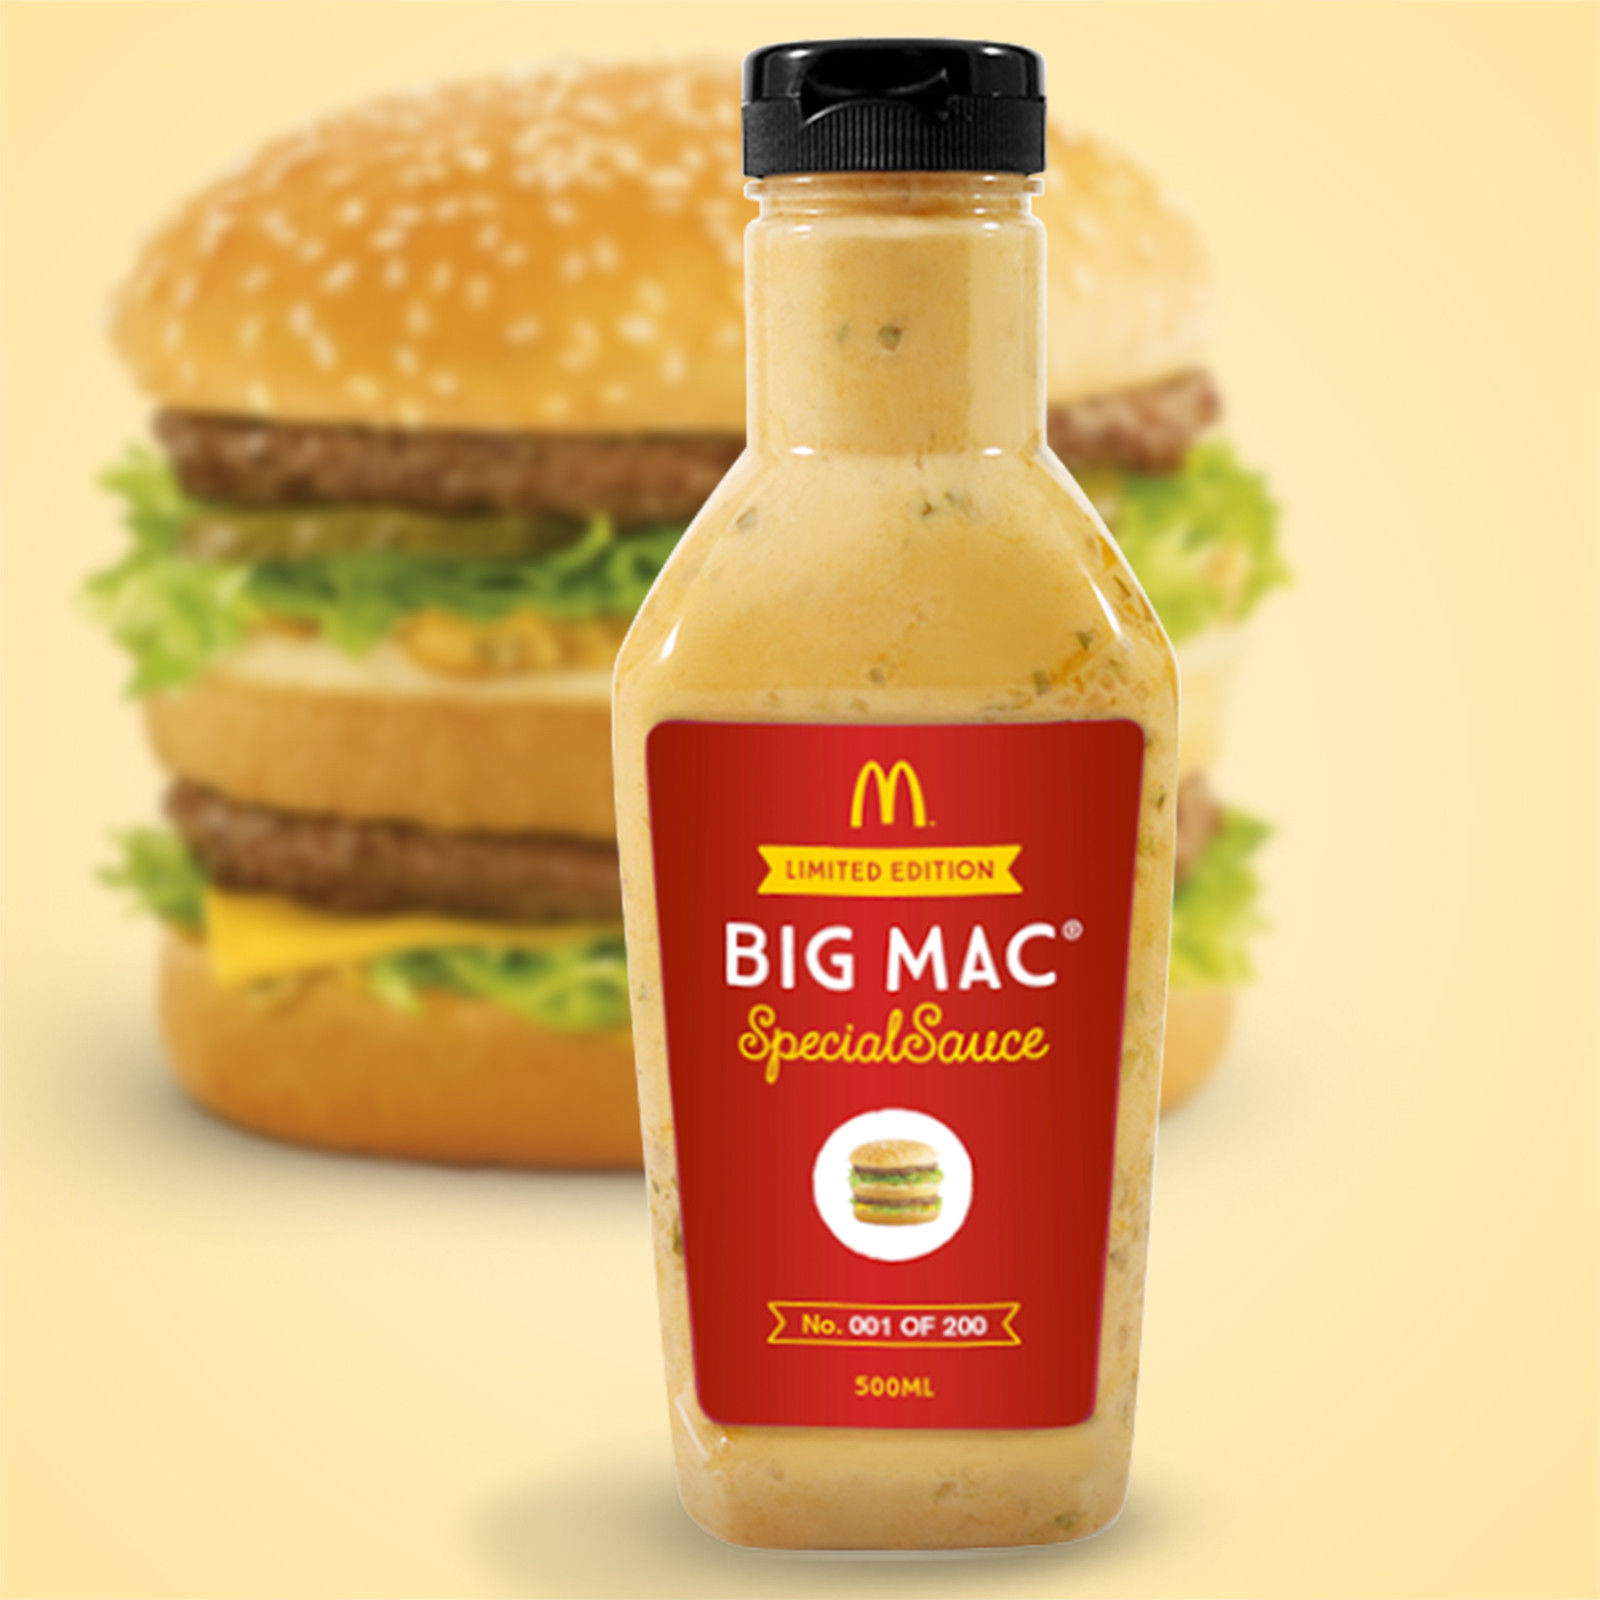 McDonald’s selling Big Mac Special Sauce